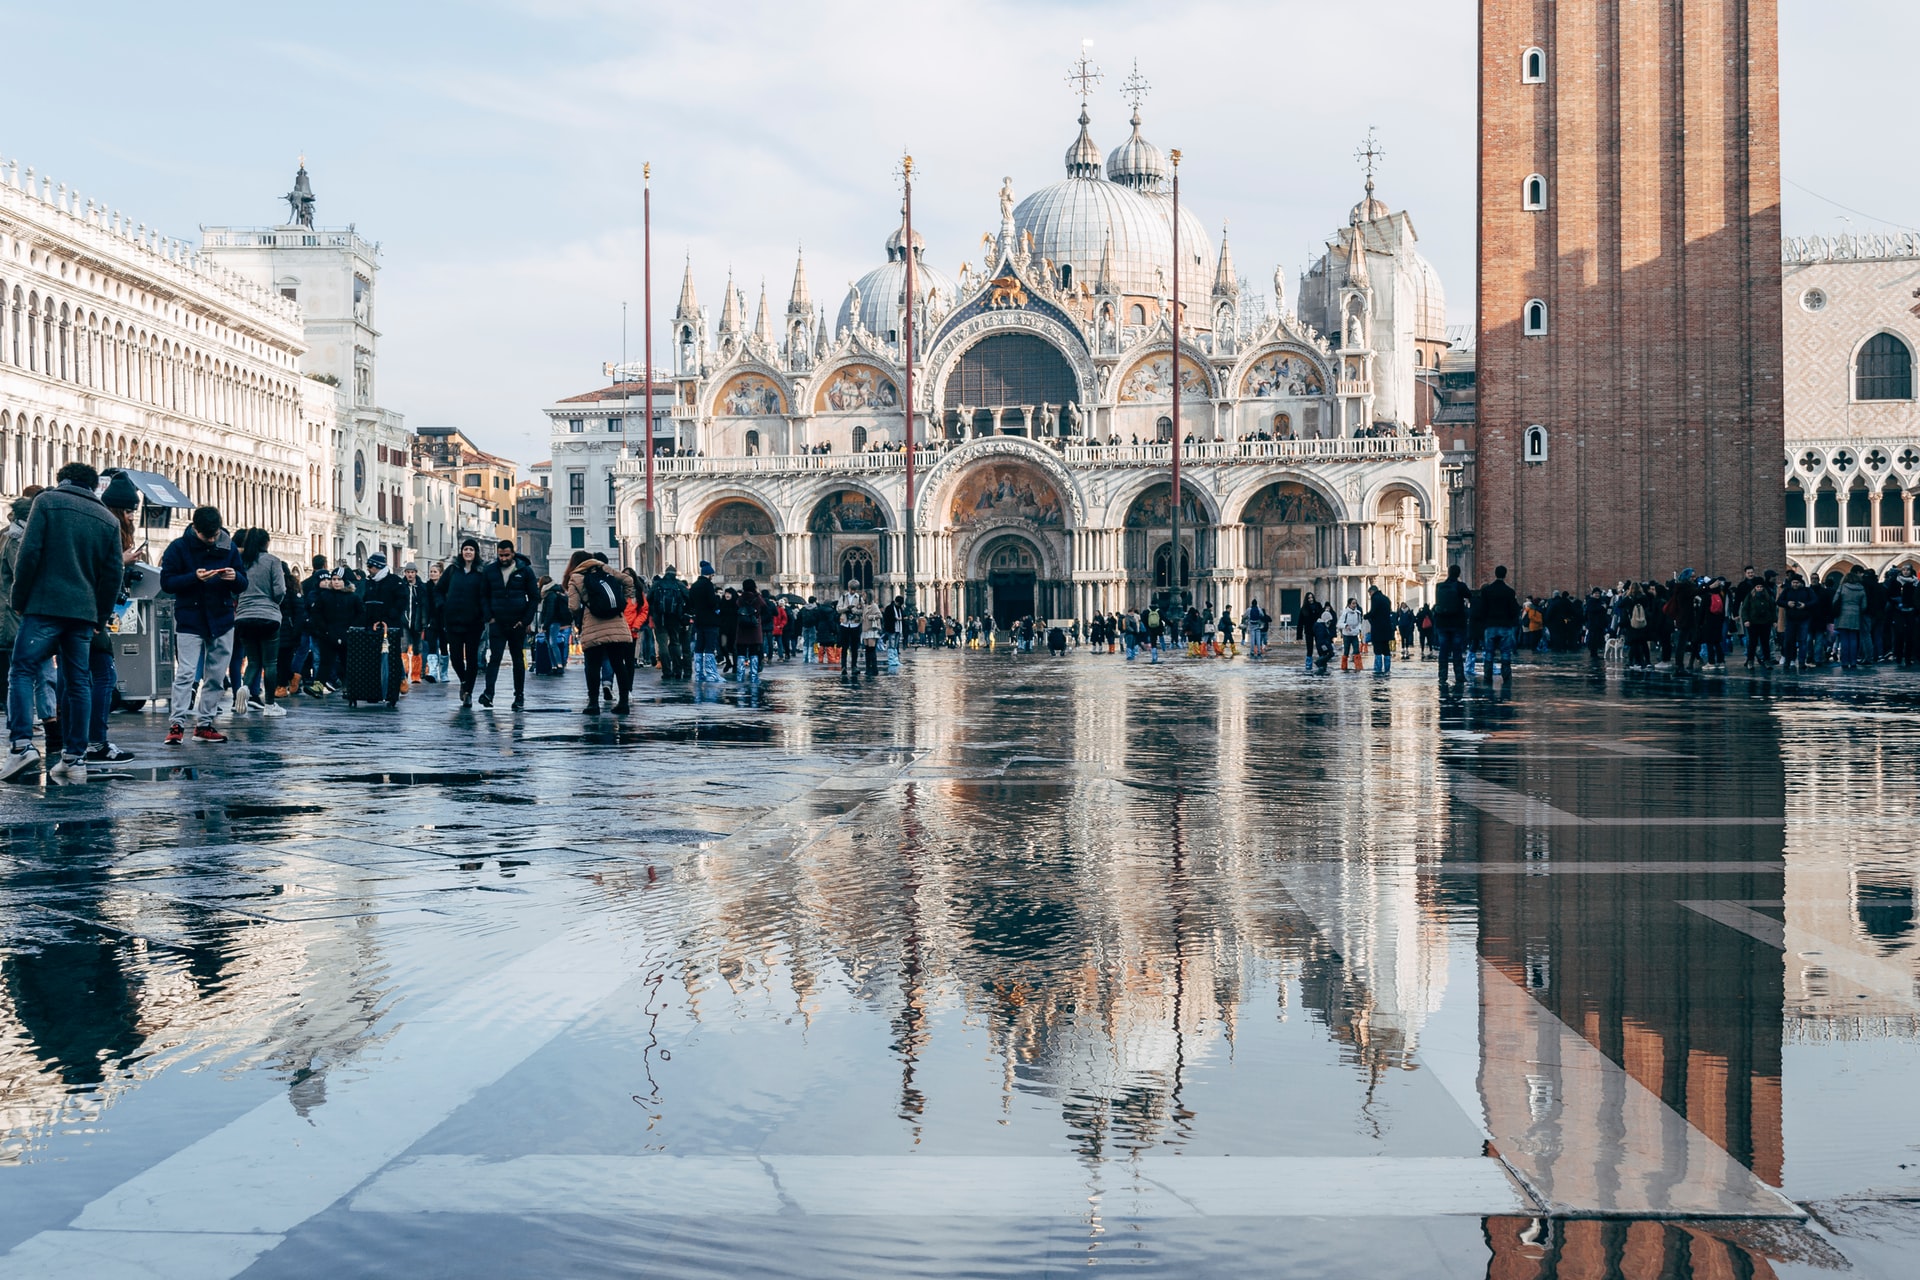 Sede de algunas de las atracciones turísticas más visitadas de Venecia, San Marco es el sestiere veneciano por excelencia y la mejor zona donde alojarse en Venecia para estar cerca de todo